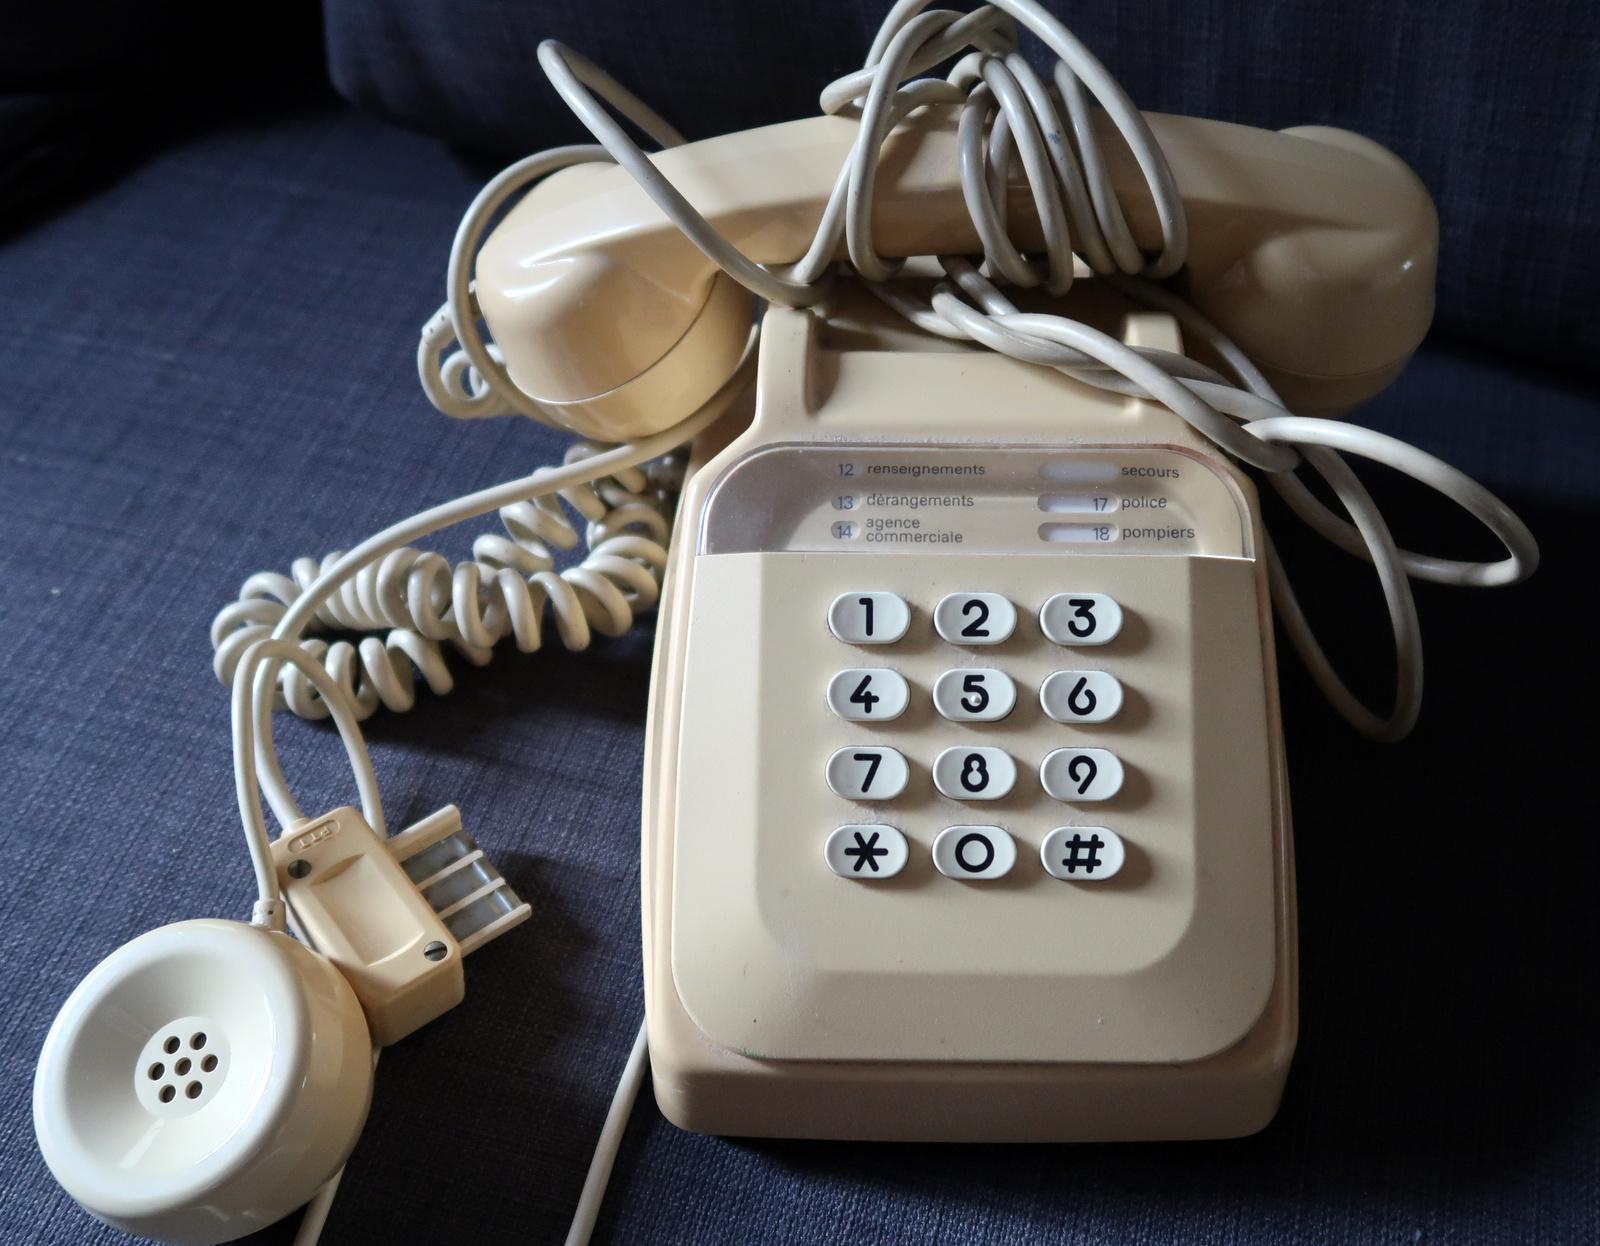 Lassen Sie sich von unserem beigefarbenen Haustelefon mit Knöpfen in die Retro-Ära zurückversetzen - ein reizvolles Relikt, das klassisches Design mit modernem Komfort verbindet. Mit den Maßen 13 cm x 10 cm x 22 cm ist dieses Telefon in einem